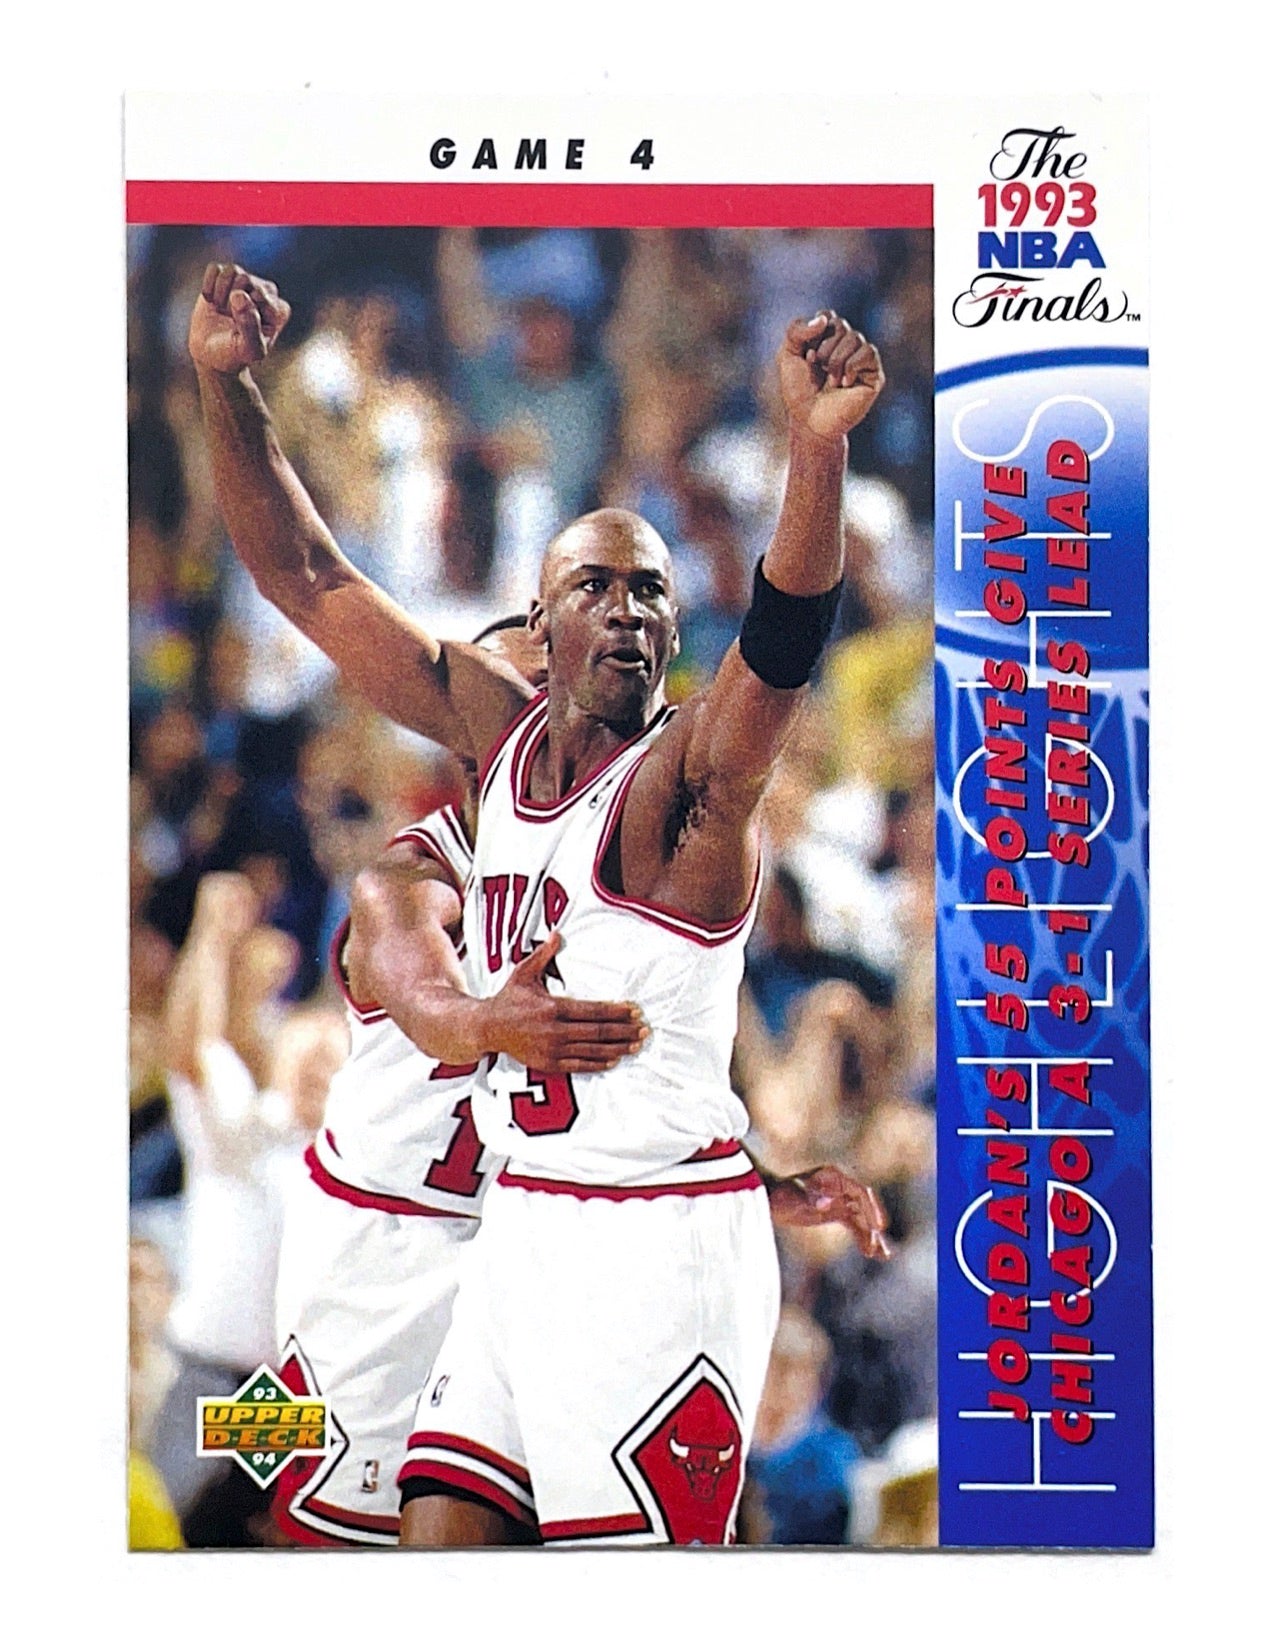 Michael Jordan 1993-94 Upper Deck NBA Finals #201